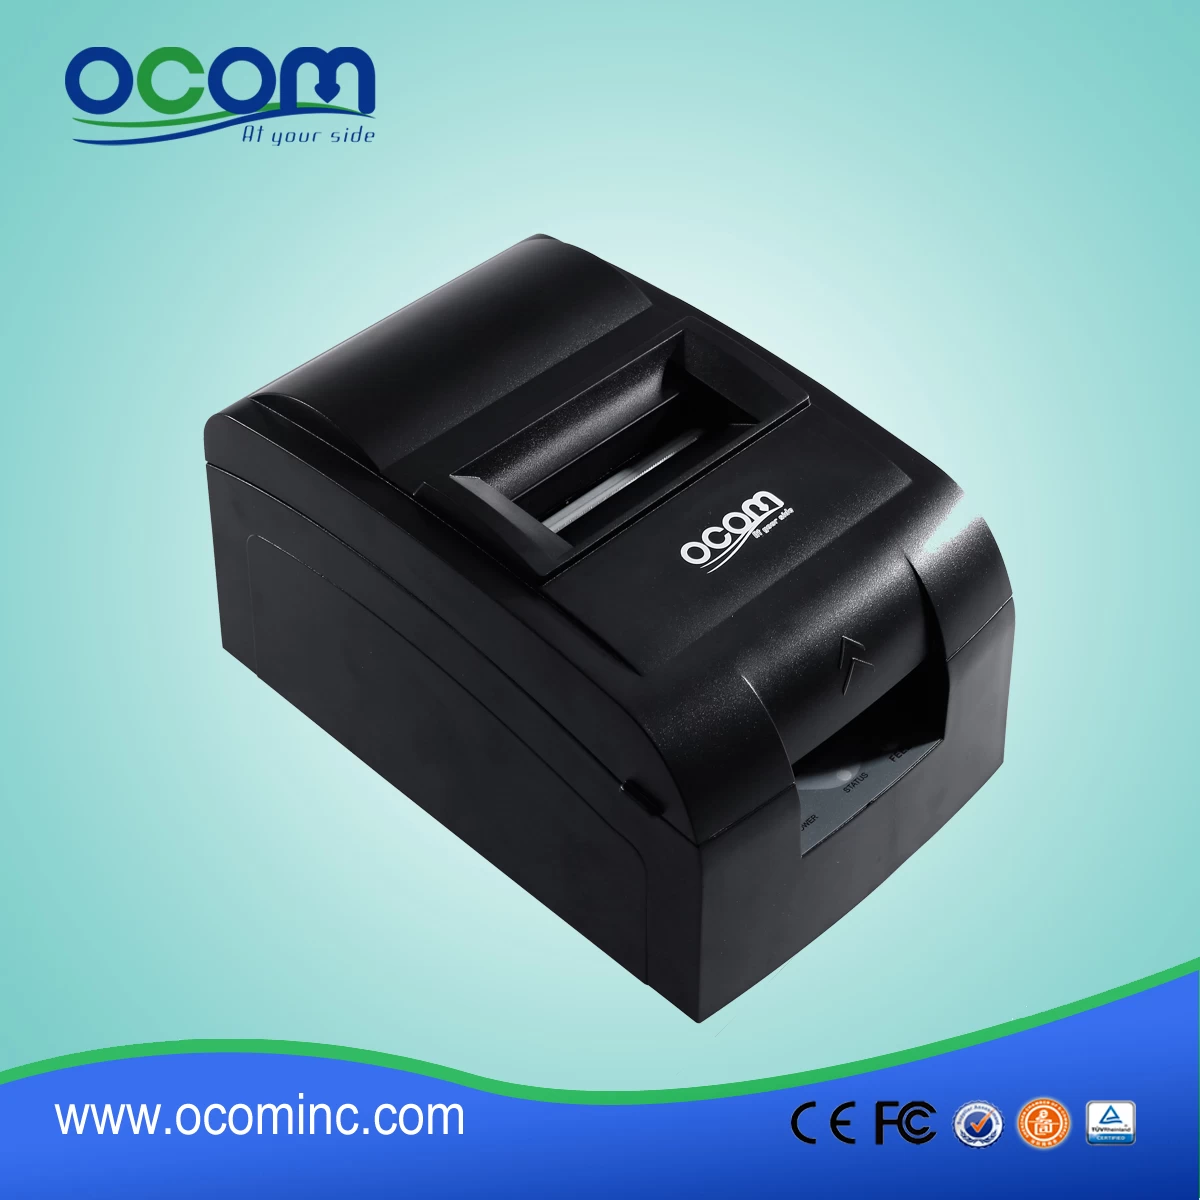 (OCPP-762) 76mm Impact Dot Matrix Receipt Printer With Manual-cutter